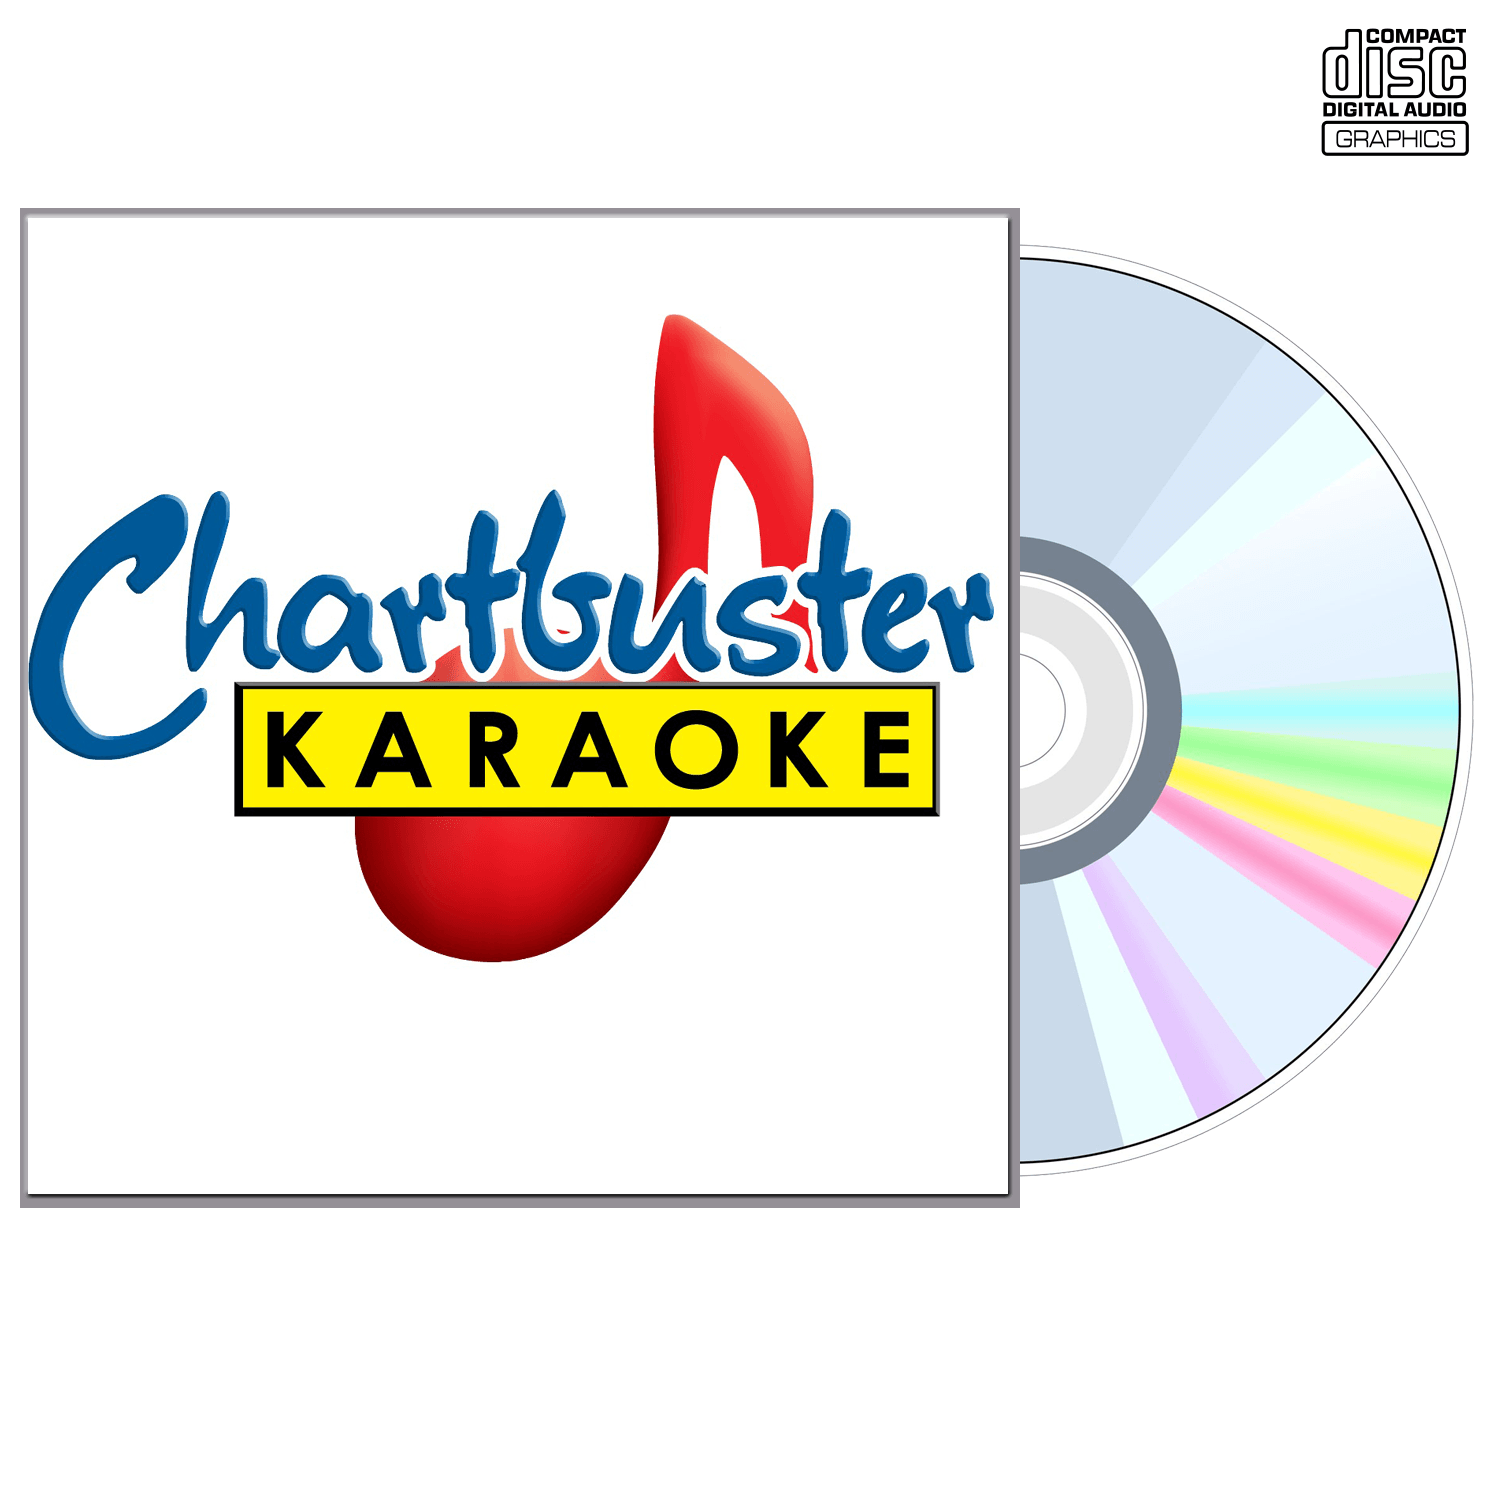 Sons Of The Desert - CD+G - Chartbuster Karaoke - Karaoke Home Entertainment